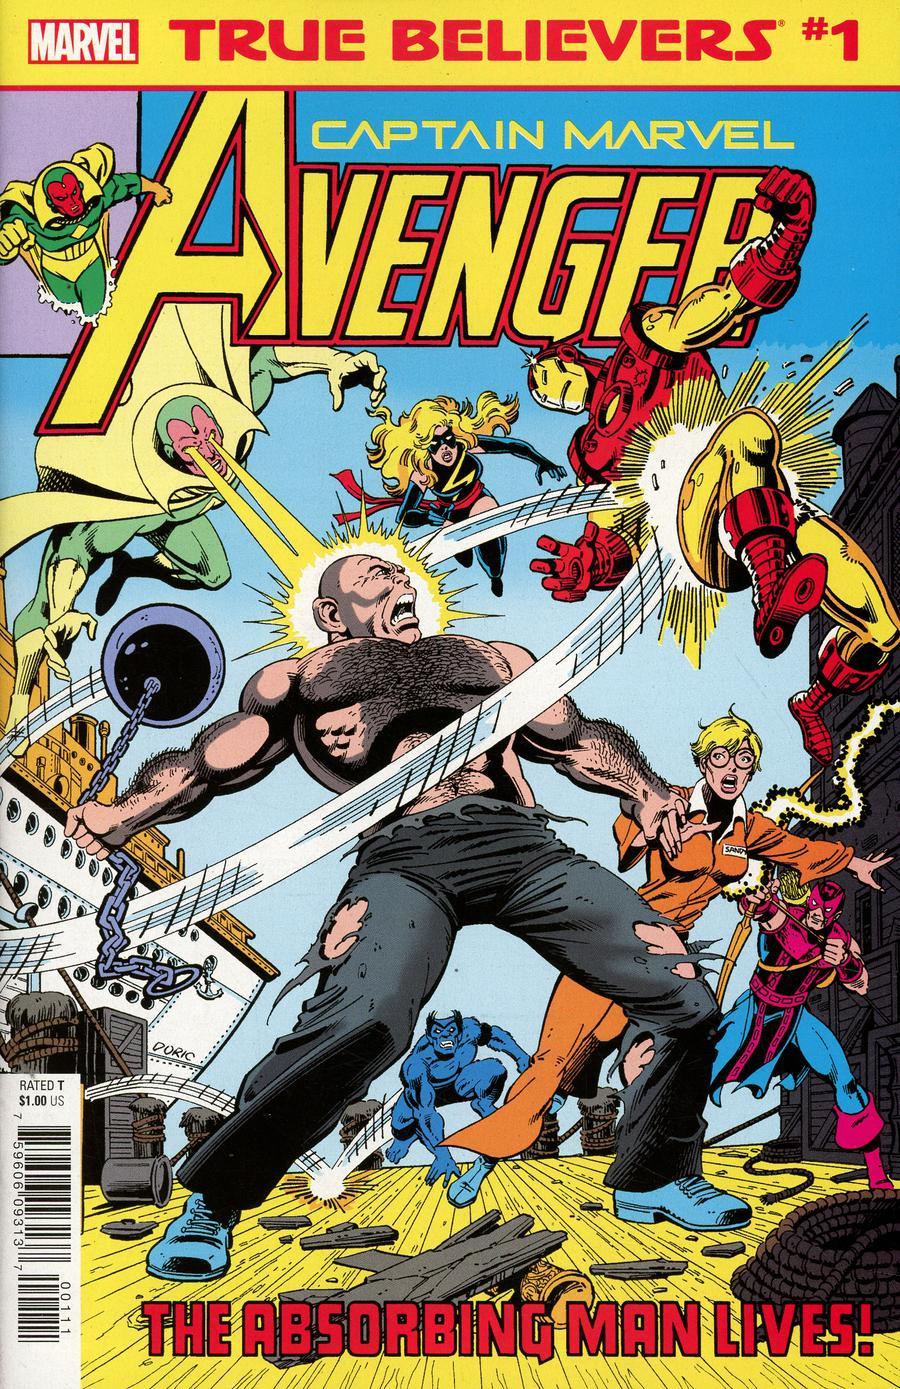 True Believers Captain Marvel Avenger Vol. 1 #1